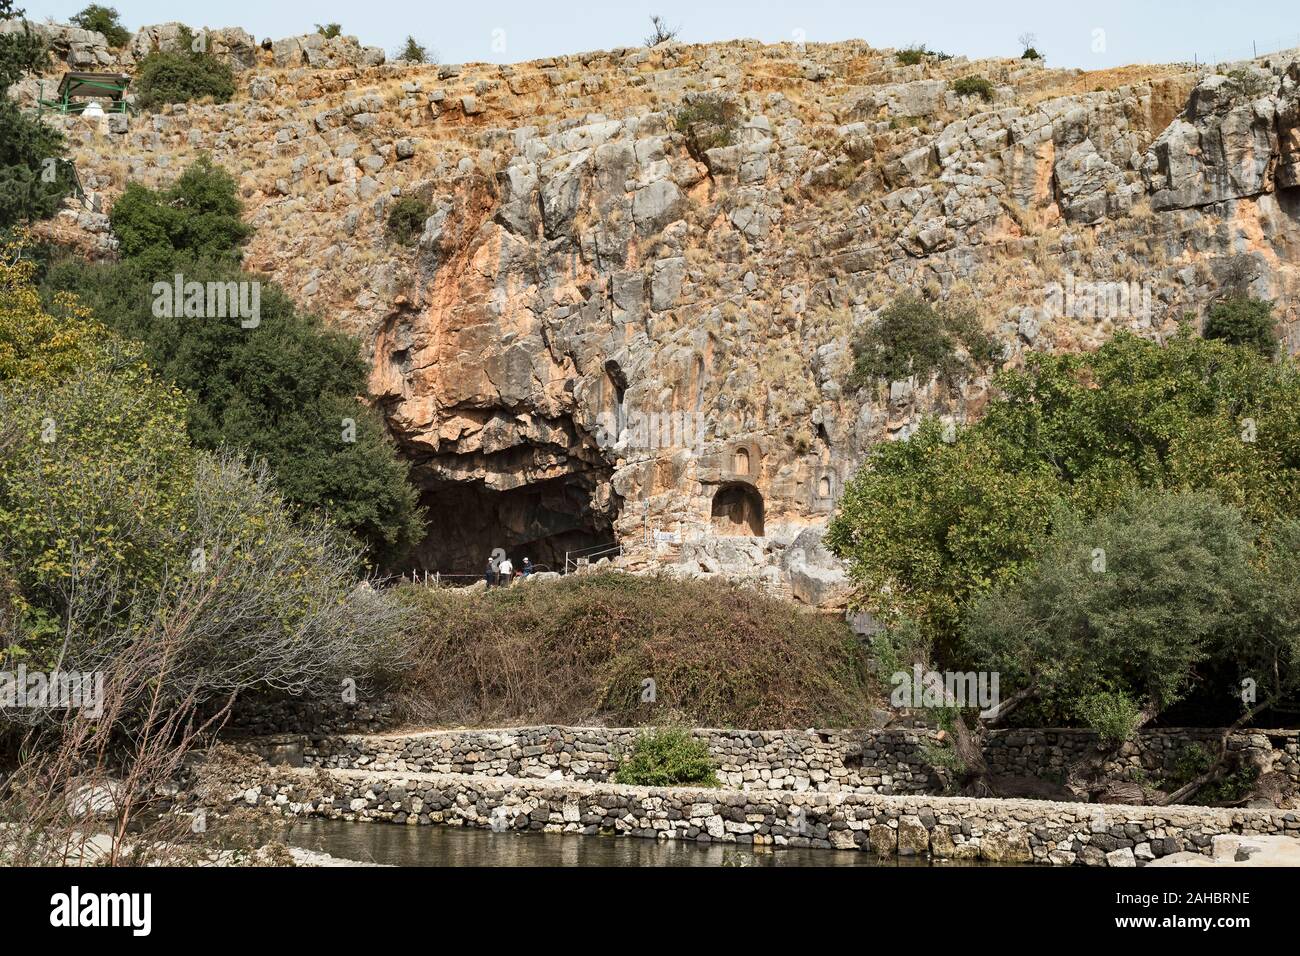 Les touristes à la découverte de la grotte de pan à la base d'une haute falaise dans l'Hermon stream park en Israël avec les arbres et l'eau des piscines en l'avant-plan Banque D'Images